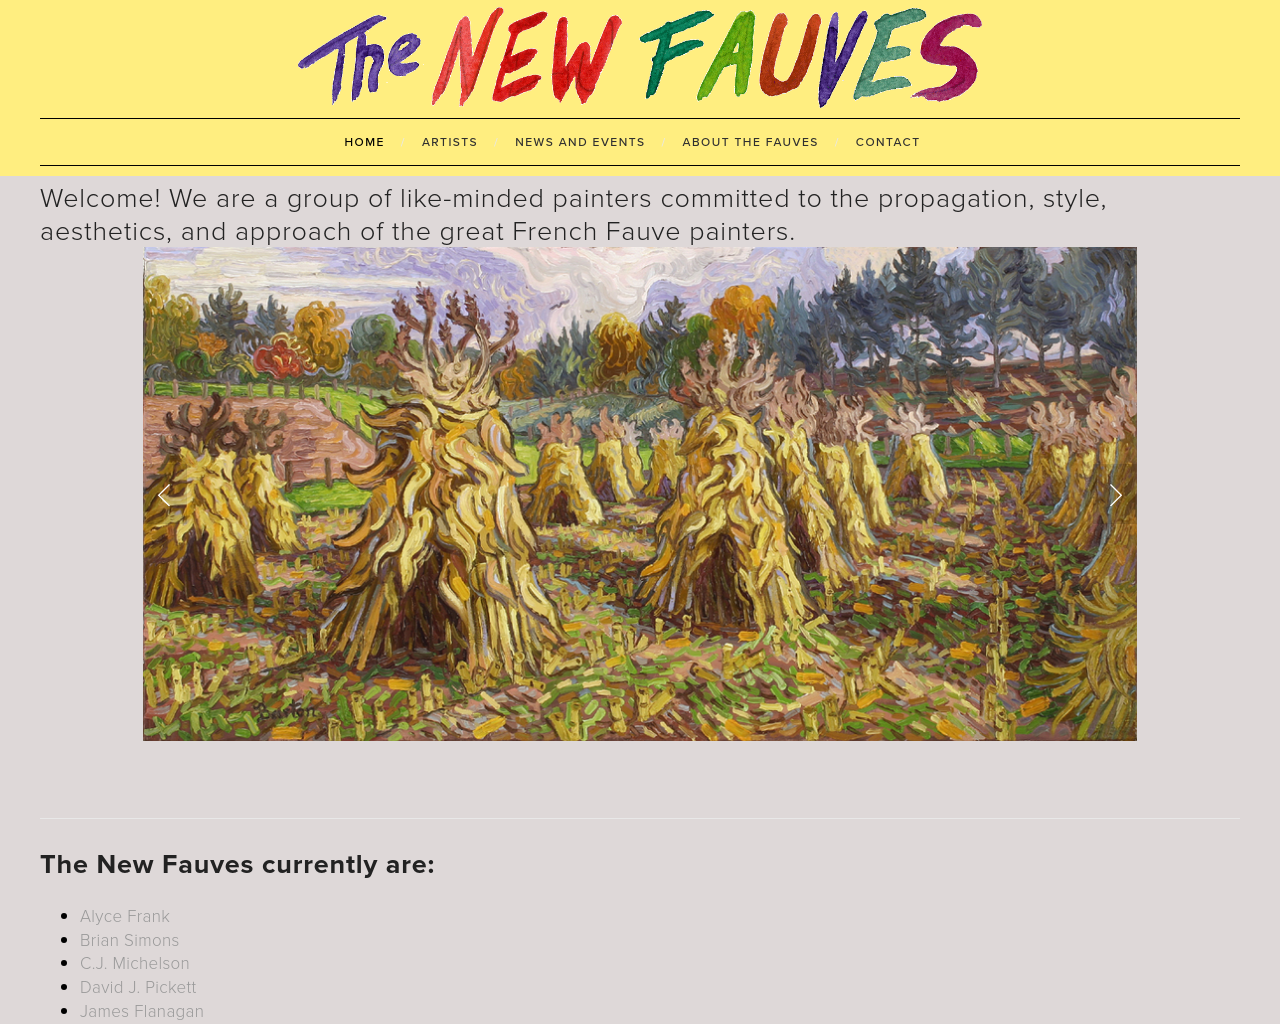 newfauves.com